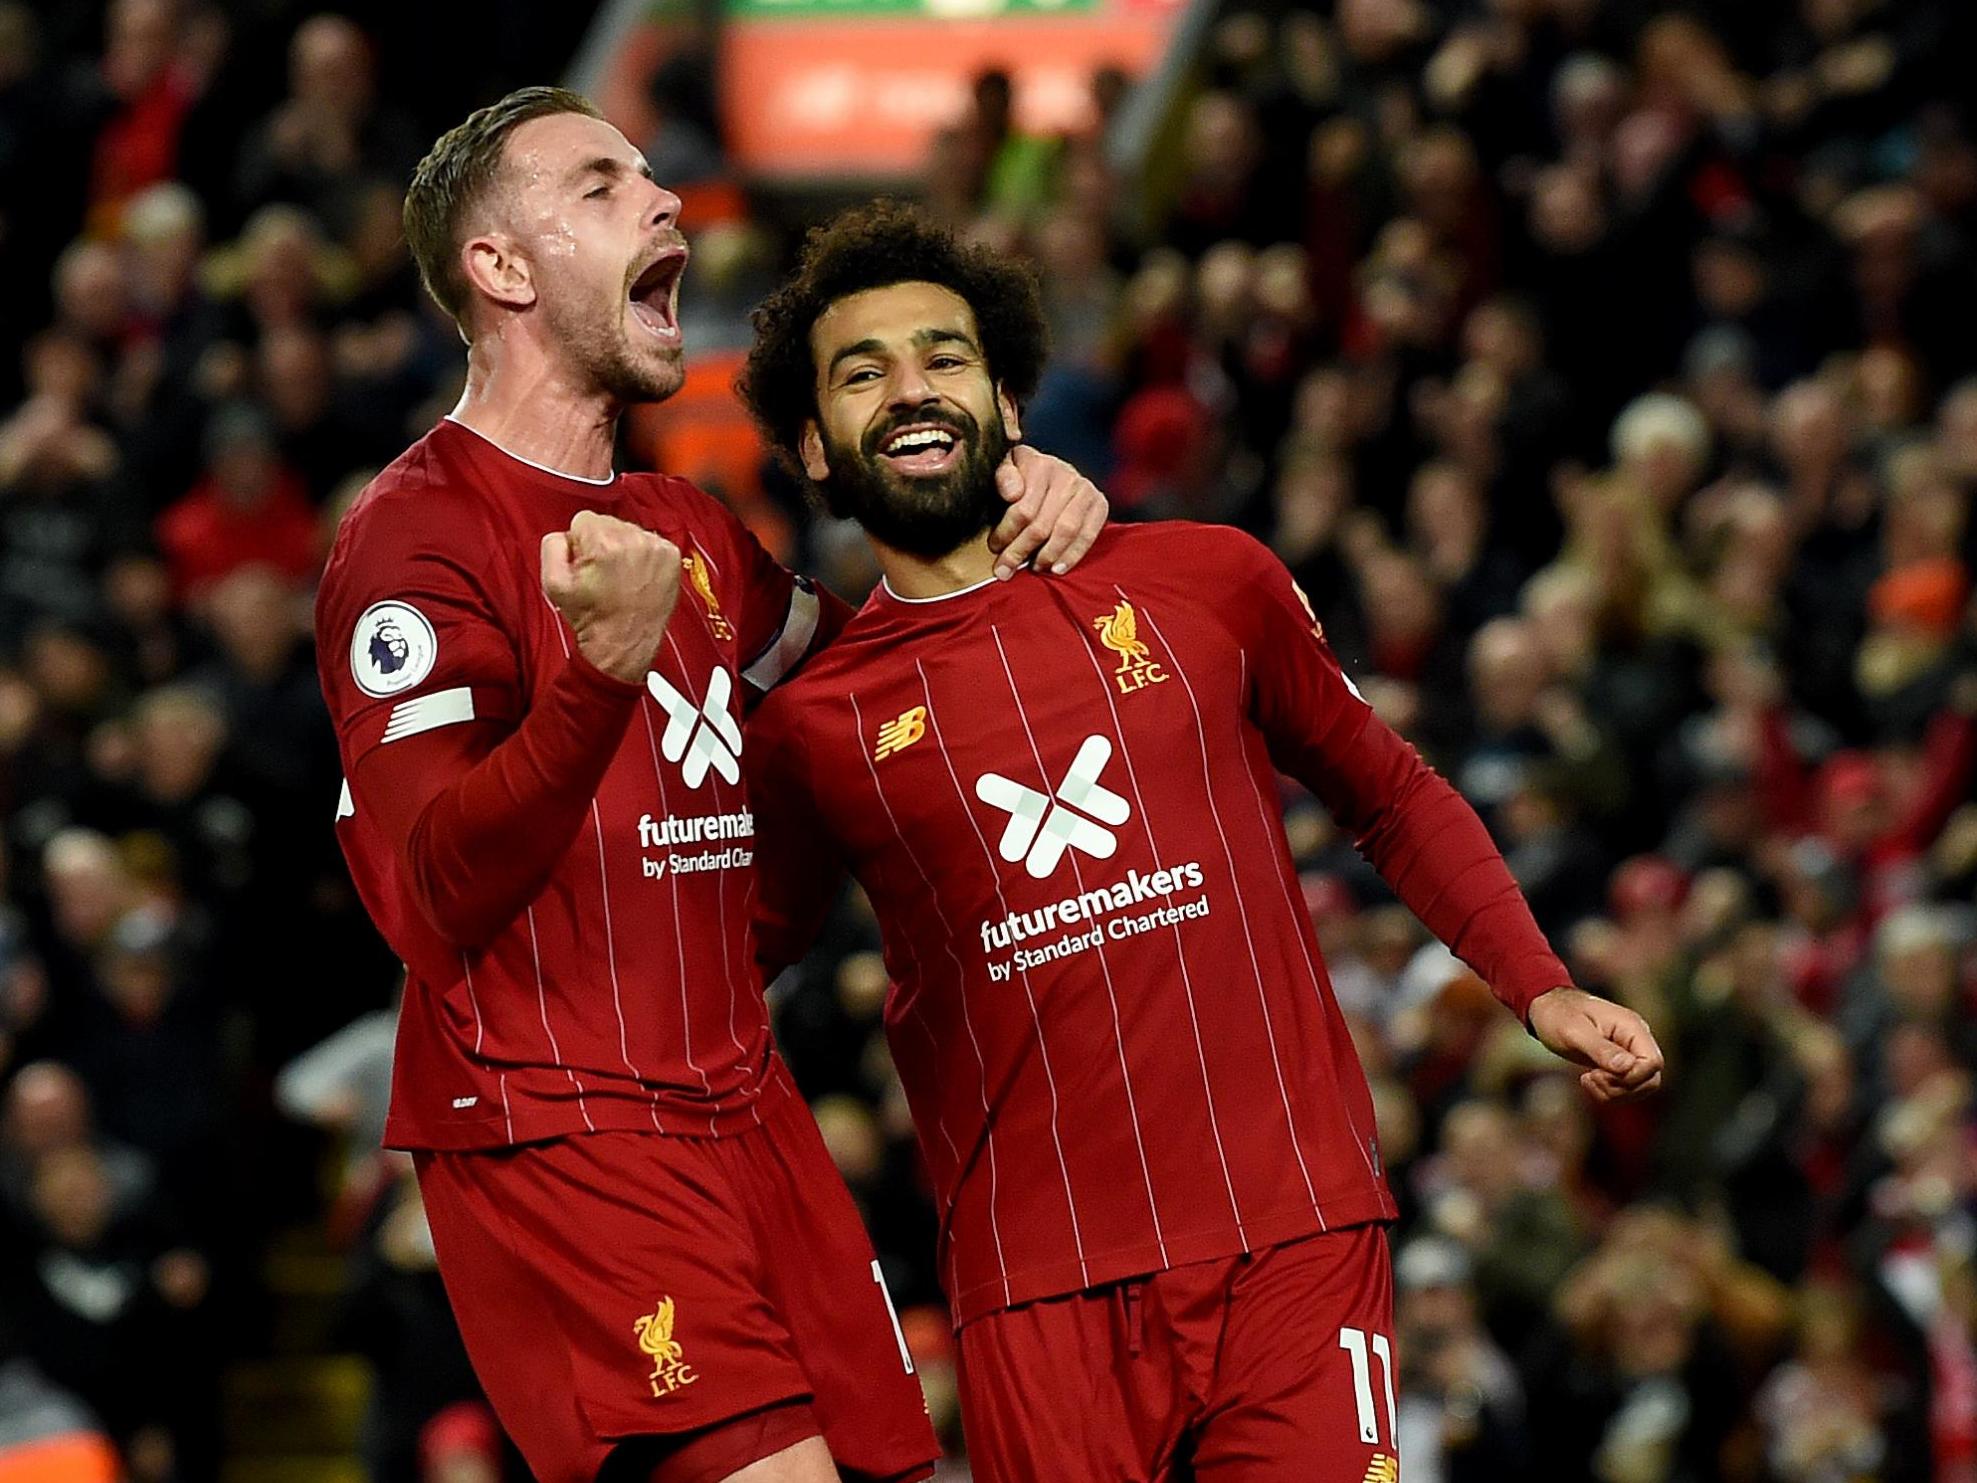 Liverpool's goalscorers Jordan Henderson and Mohamed Salah